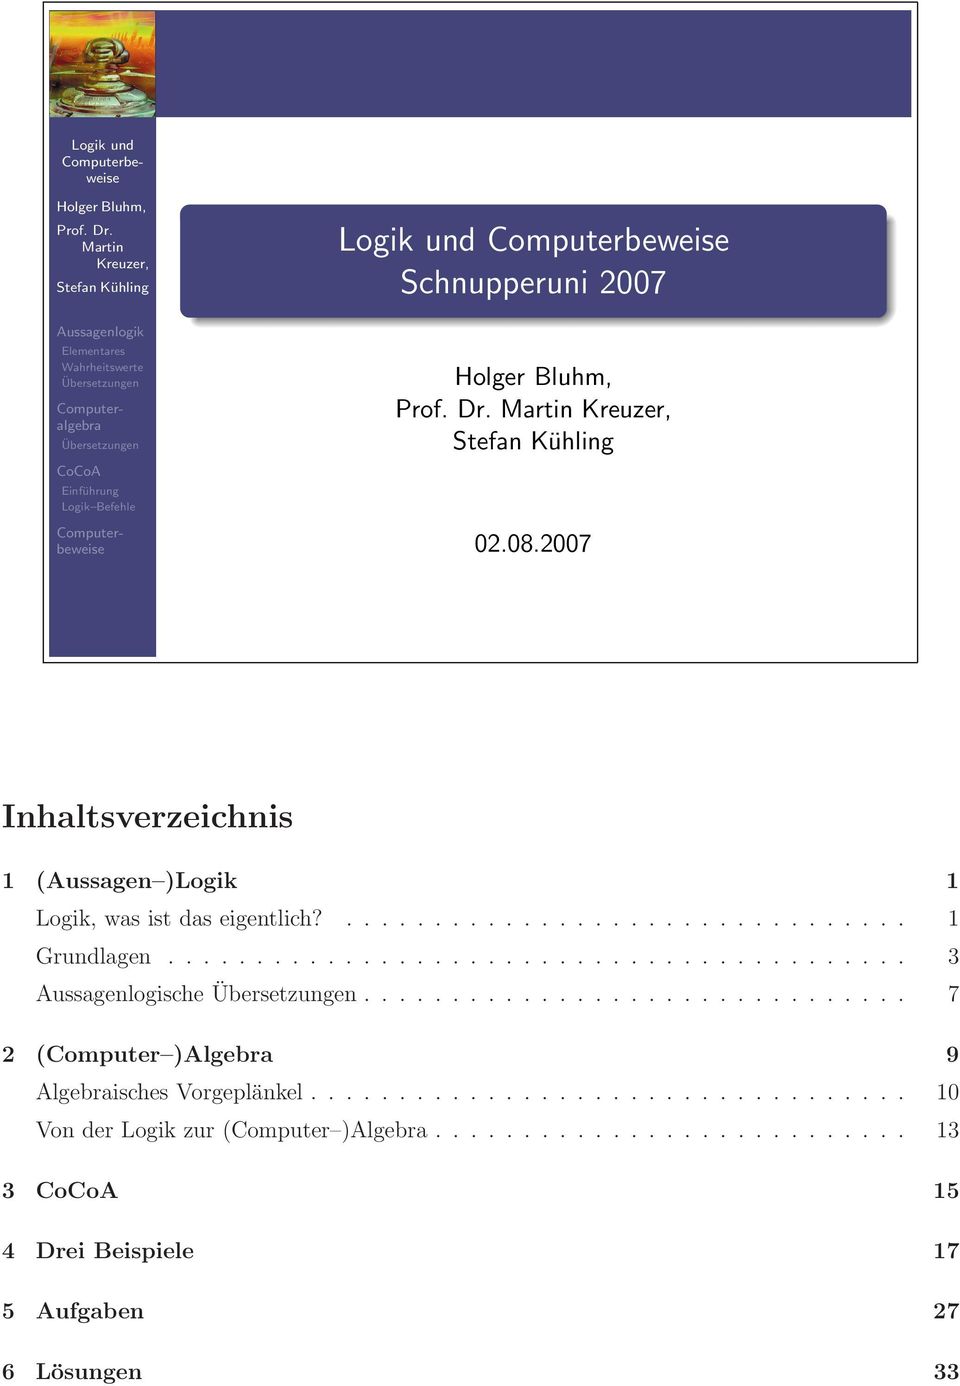 Logik und Computerbeweise Schnupperuni 2007  Martin Kreuzer, Stefan Kühling 02.08.2007 Inhaltsverzeichnis 1 (Aussagen )Logik 1 Logik, was ist das eigentlich?................................ 1 Grundlagen.